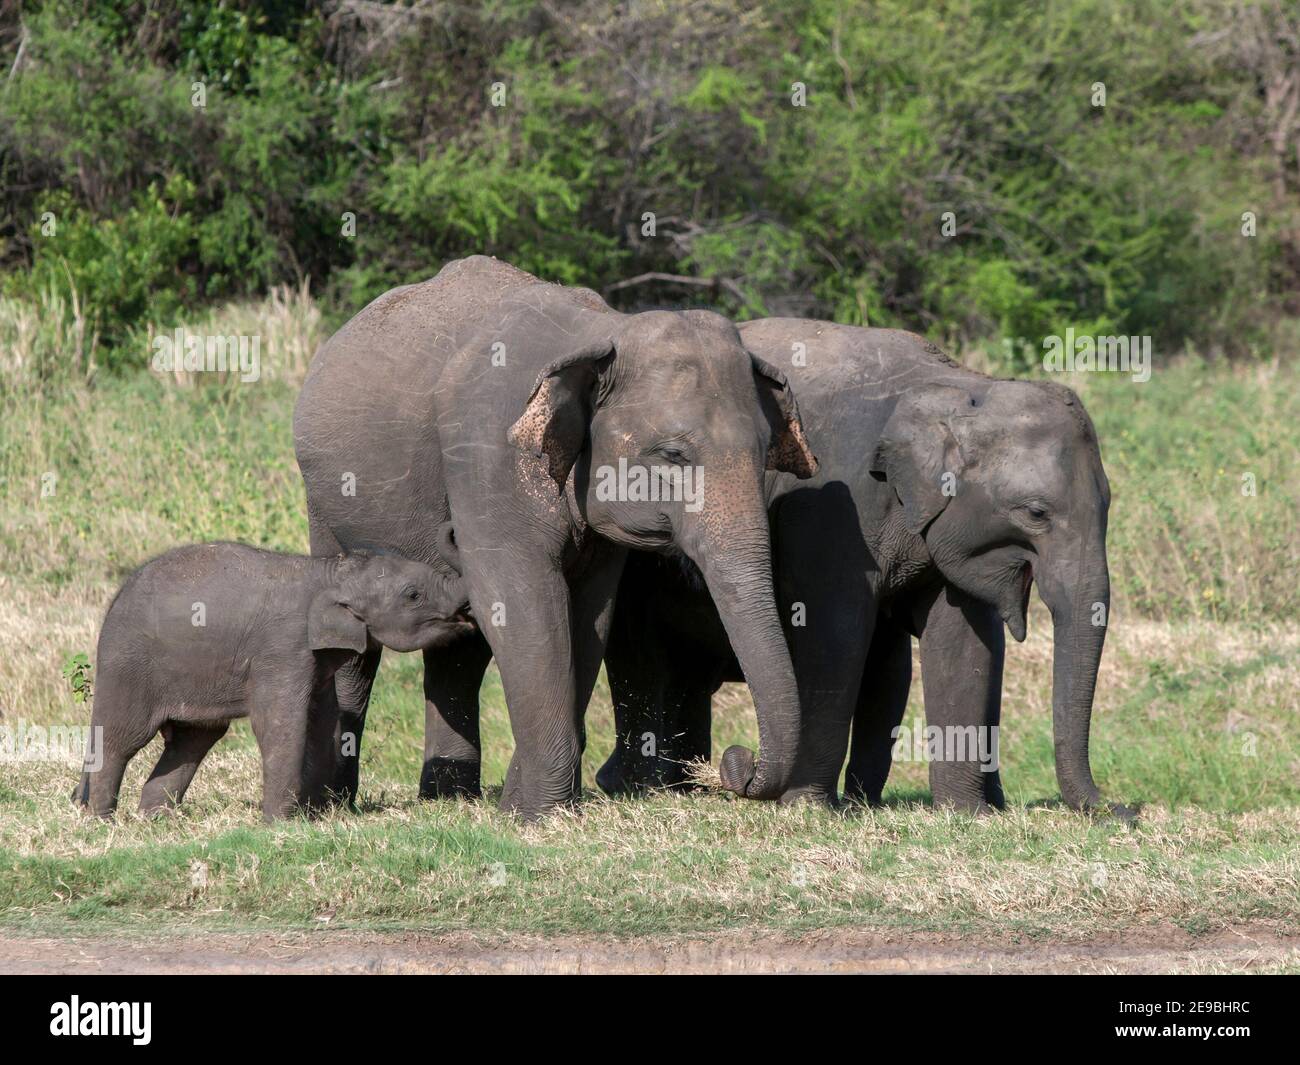 Los elefantes salvajes pastan en los pastizales adyacentes al tanque (reservorio artificial) en el Parque Nacional Minneriya, cerca de Habarana, en el centro de Sri Lanka. Foto de stock